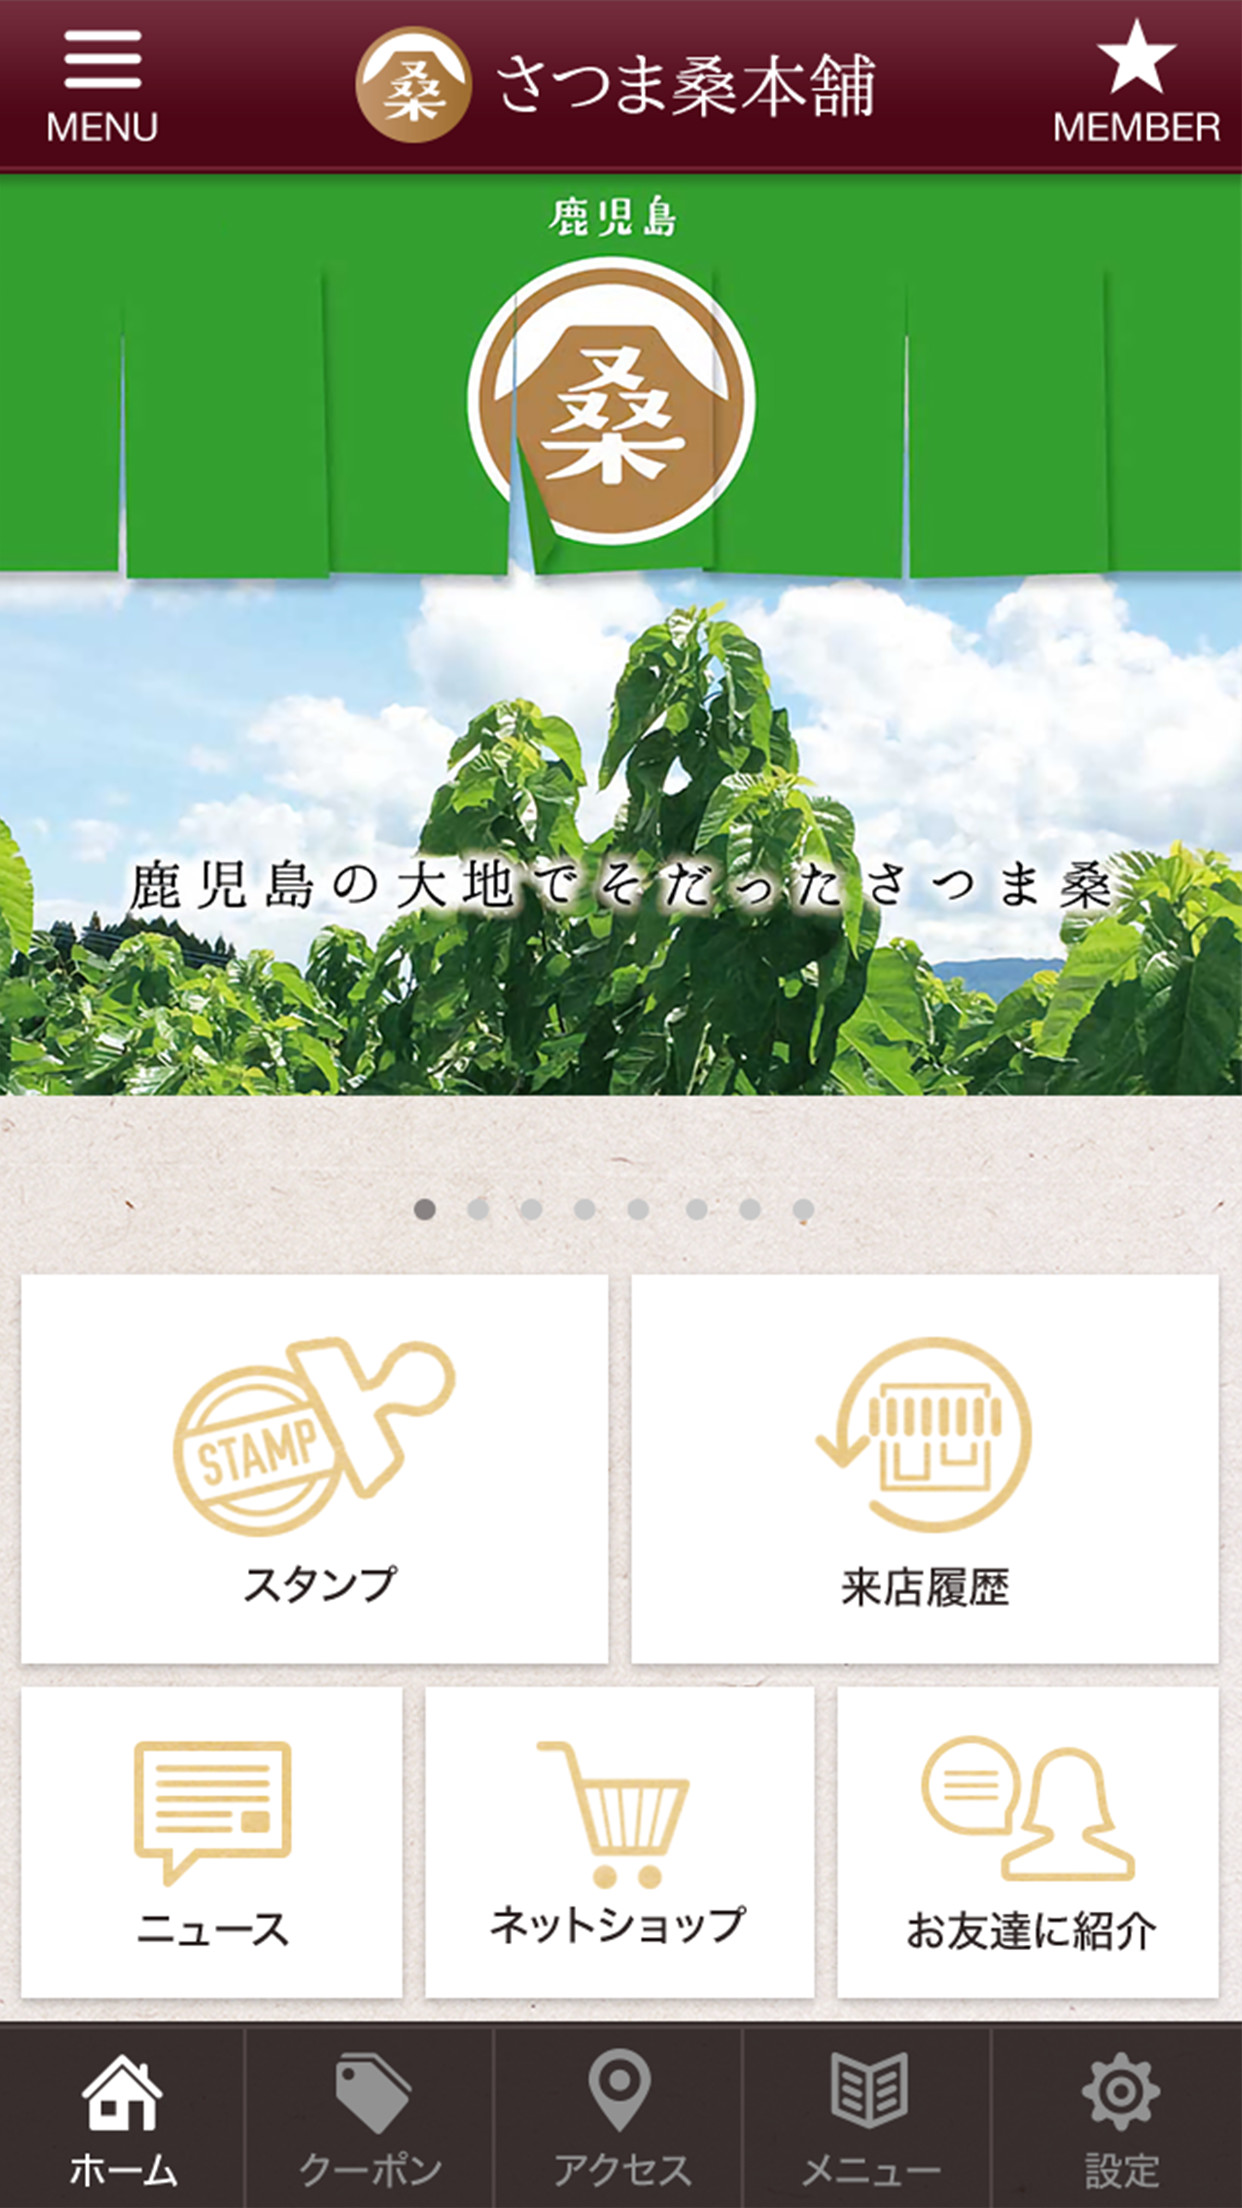 GMOおみせアプリ